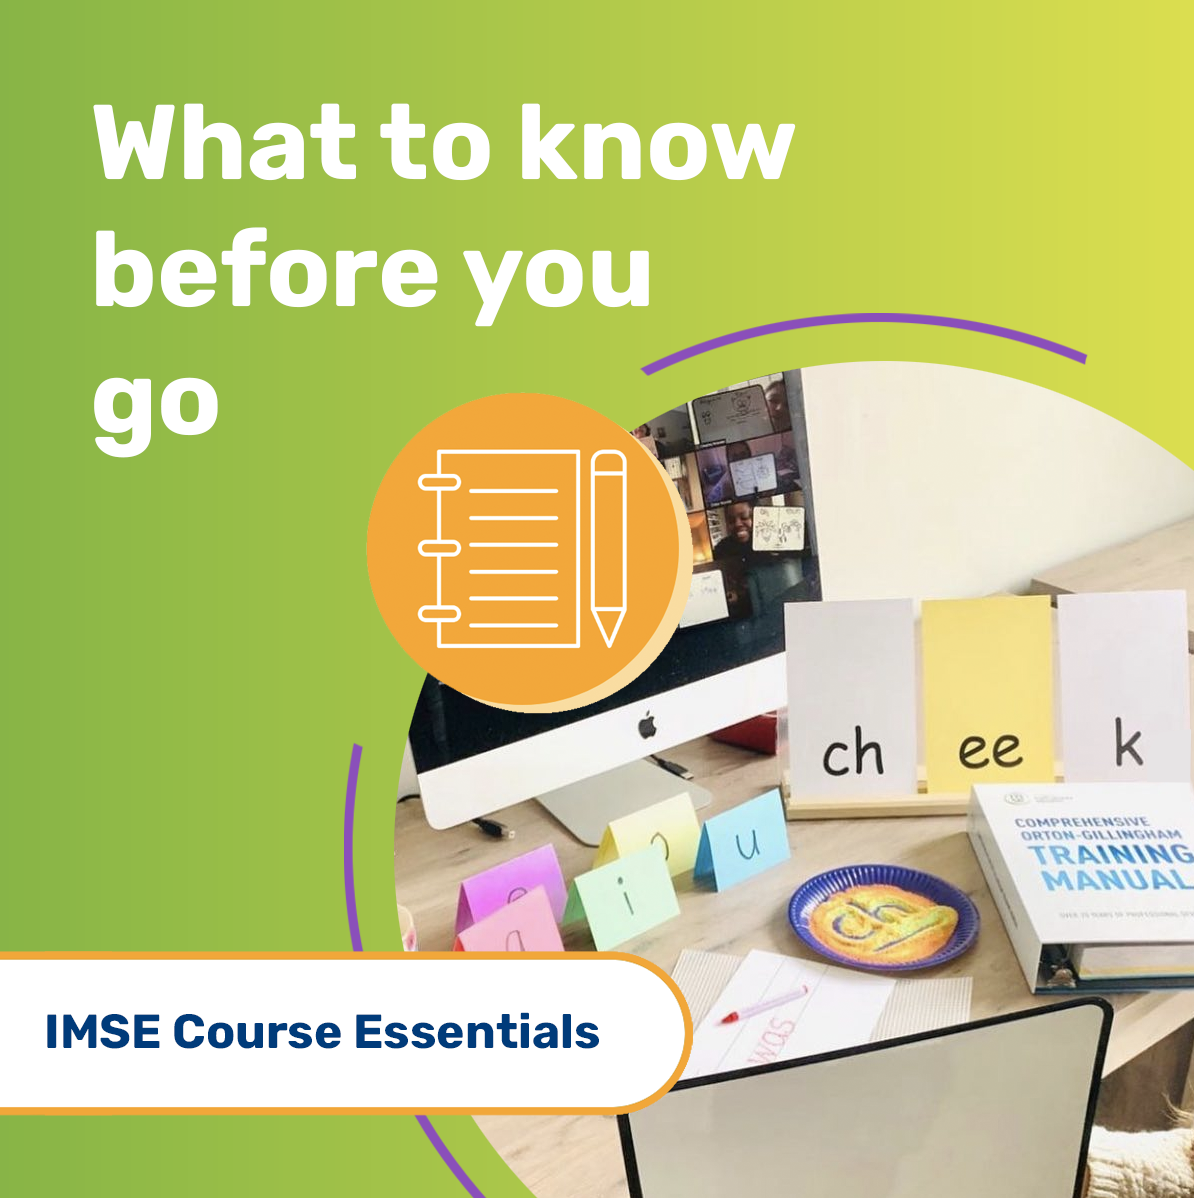 IMSE Course Essentials